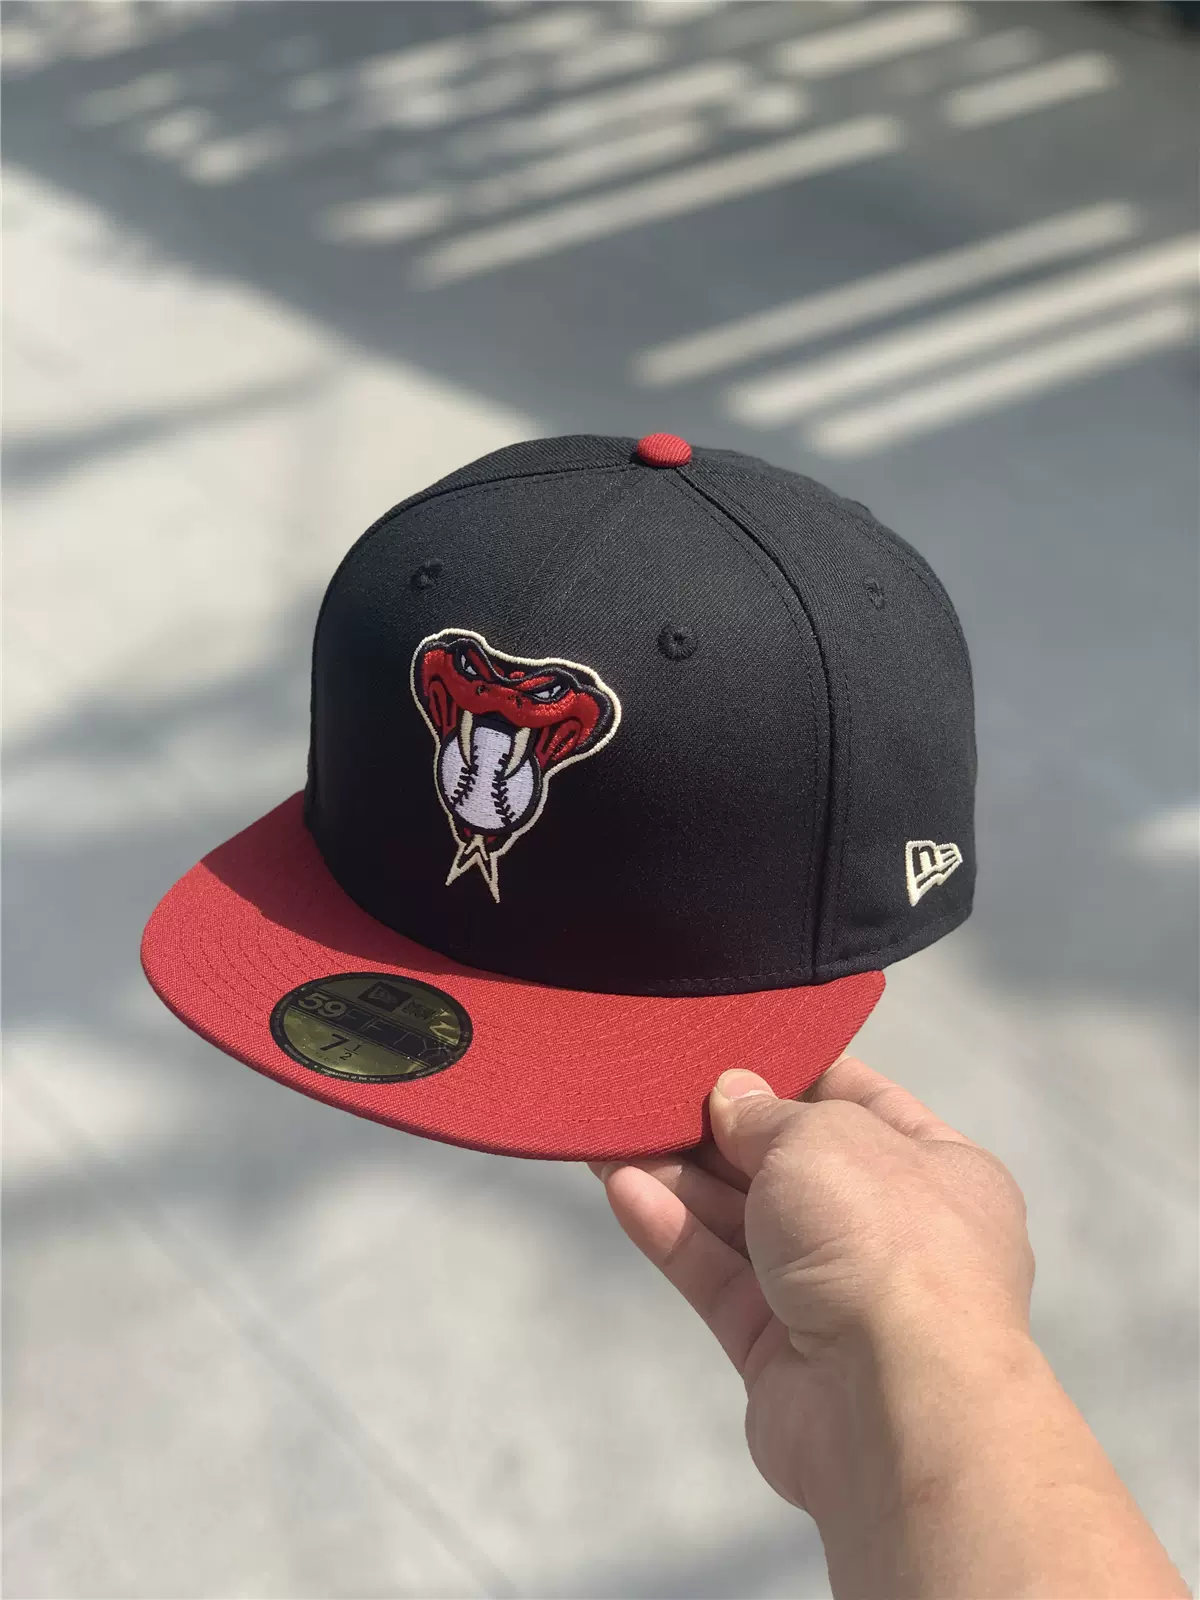 NEW ERA棒球帽MLB亞利桑那響尾蛇球員版59FIFTY街頭嘻哈男女帽-Taobao